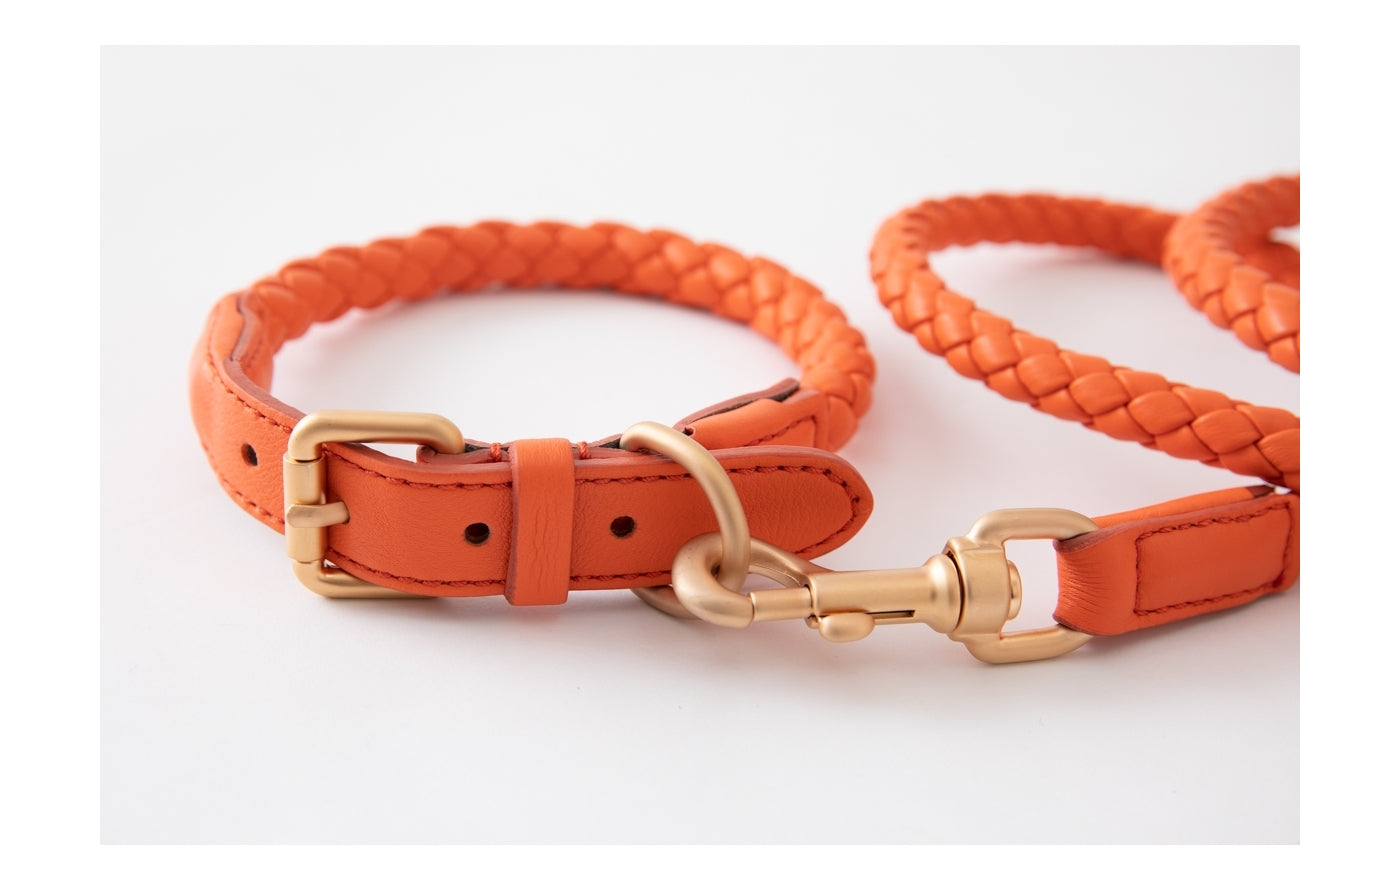 Hundeleine Ferdinando in Tangerine Orange_2.8 design for dogs_Image Leine und Halsband | VintPets